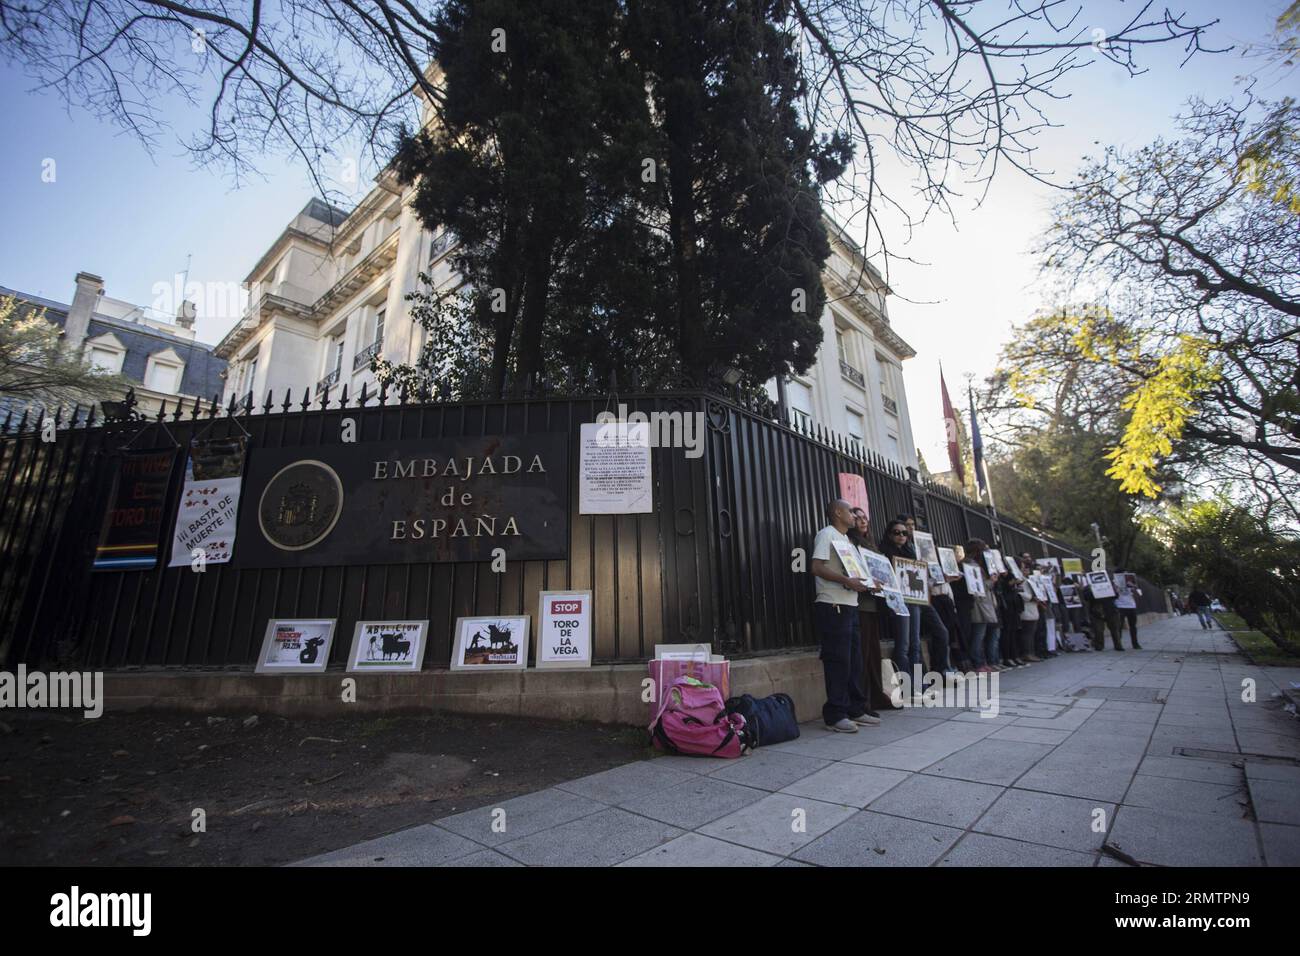 Gli attivisti prendono parte a una protesta contro l'uccisione di tori davanti all'ambasciata spagnola a Buenos Aires, Argentina, il 15 settembre 2014. I membri delle organizzazioni per i diritti degli animali si sono riuniti di fronte all'ambasciata spagnola per protestare contro l'uccisione dei tori nell'ambito del Torneo Toro de la Vega di Torsedillas, Spagna, che si svolge il secondo martedì di settembre e prevede la messa a morte di un toro. ) (vf) (sp) ARGENTINA-BUENOS AIRES-SPAGNA-SOCIETÀ-PROTESTA MartinxZabala PUBLICATIONxNOTxINxCHN attivisti prendono parte a una protesta contro l'uccisione di Bulls di fronte alla Spa Foto Stock